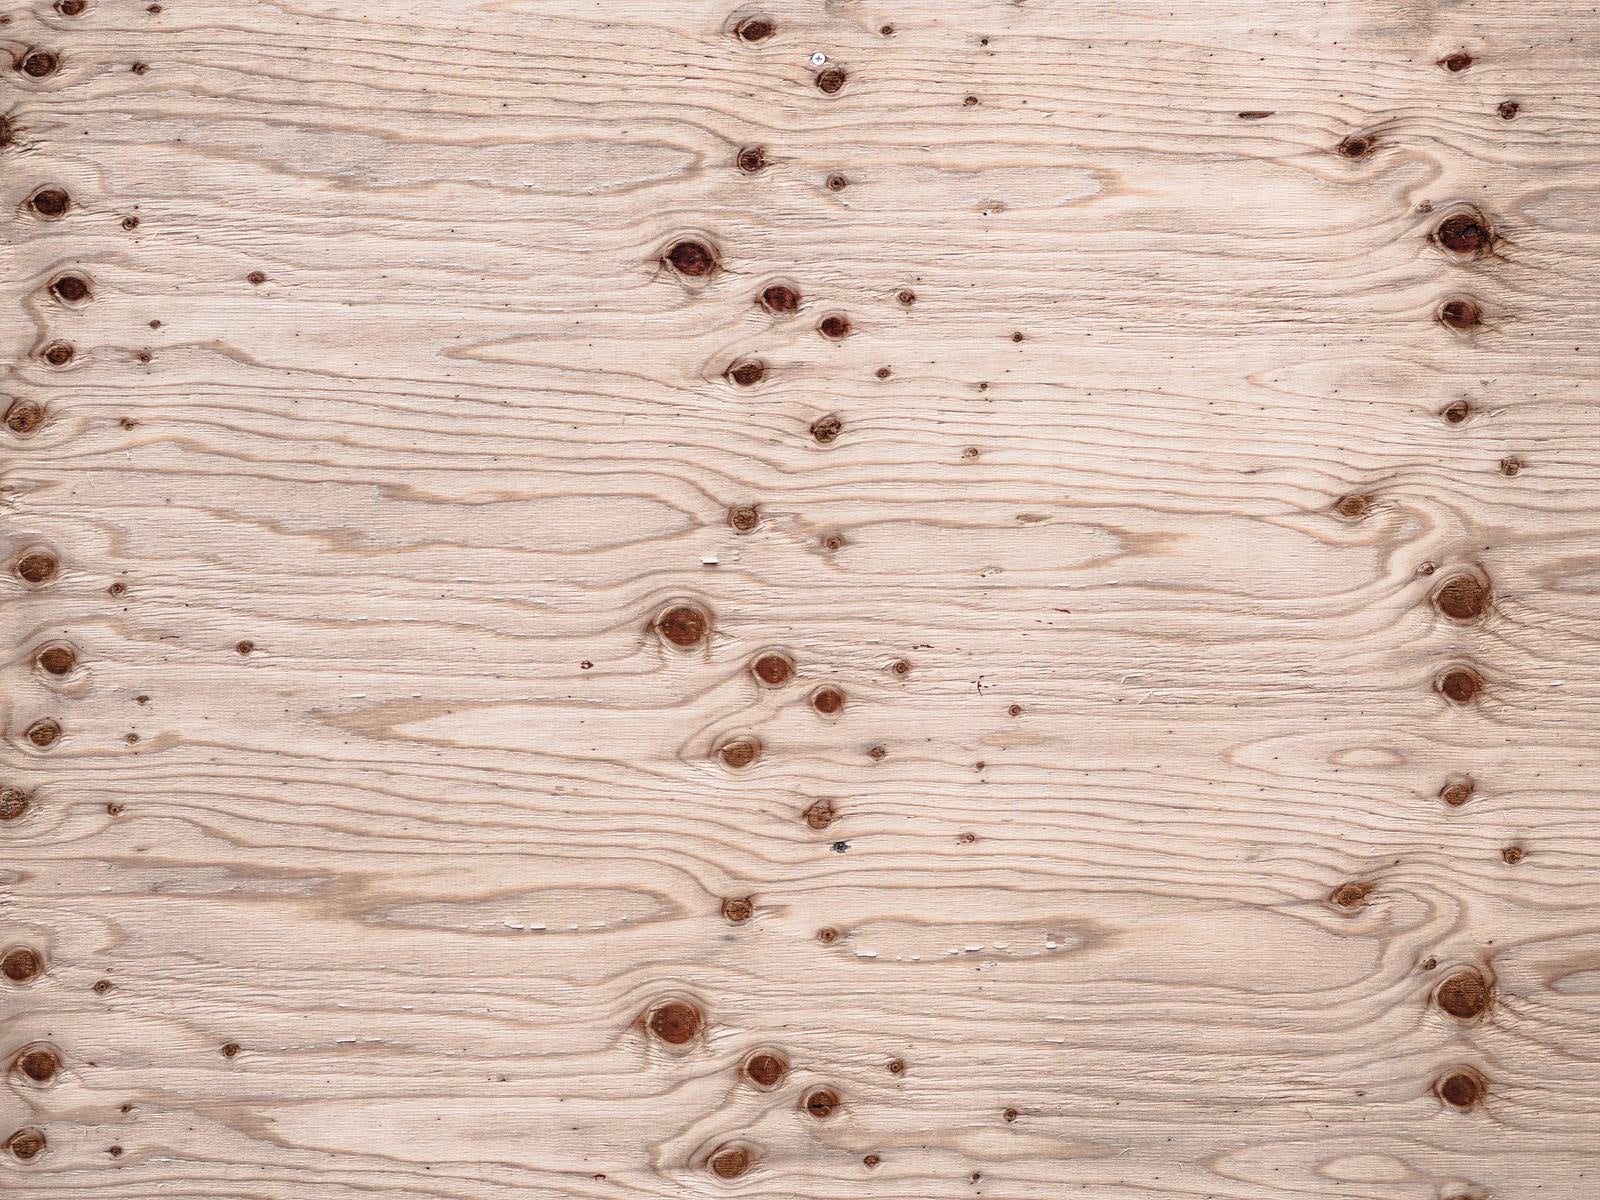 「節が並ぶ木材のテクスチャー」の写真